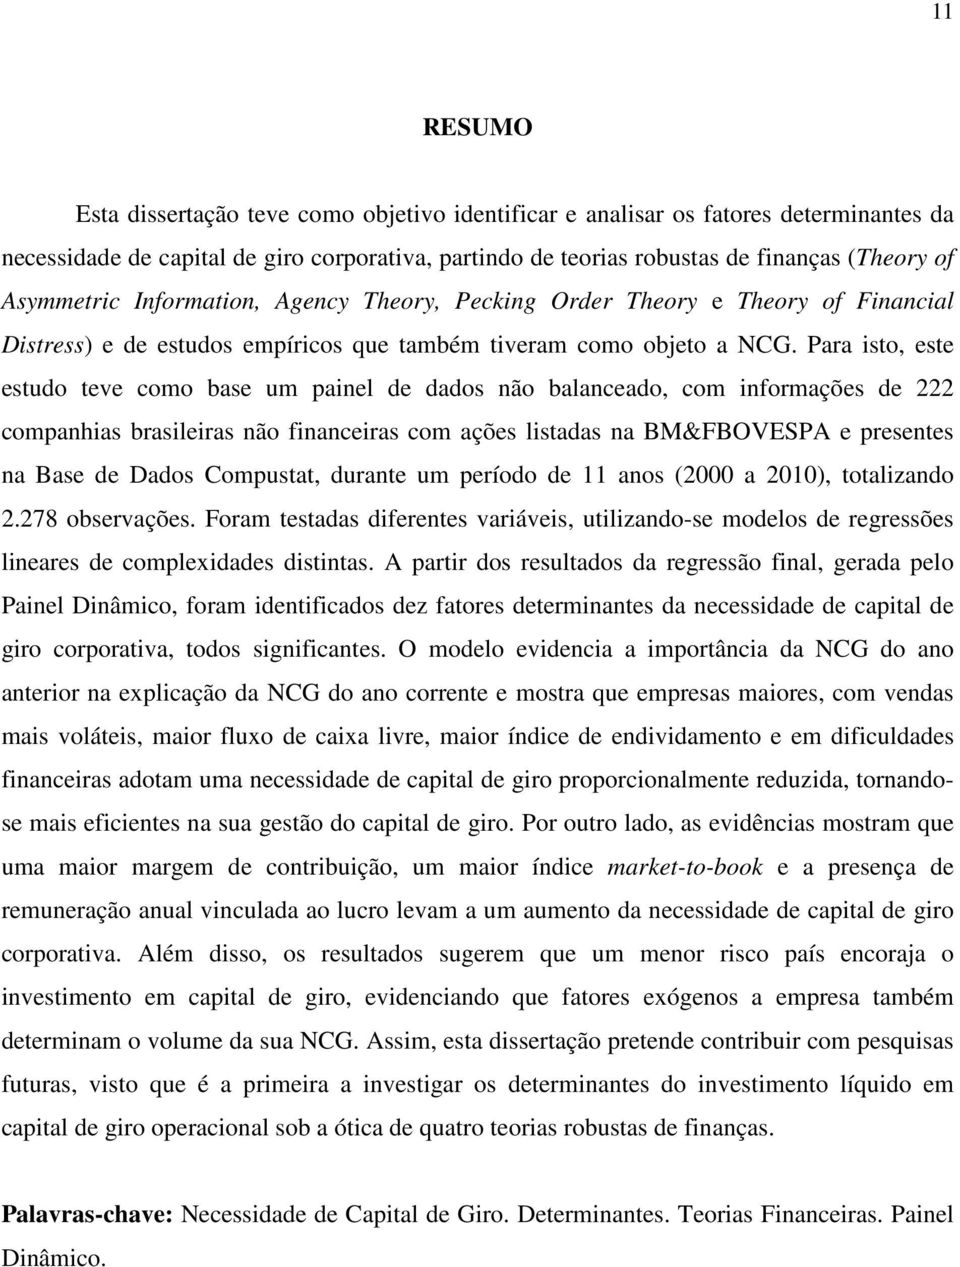 Para isto, este estudo teve como base um painel de dados não balanceado, com informações de 222 companhias brasileiras não financeiras com ações listadas na BM&FBOVESPA e presentes na Base de Dados